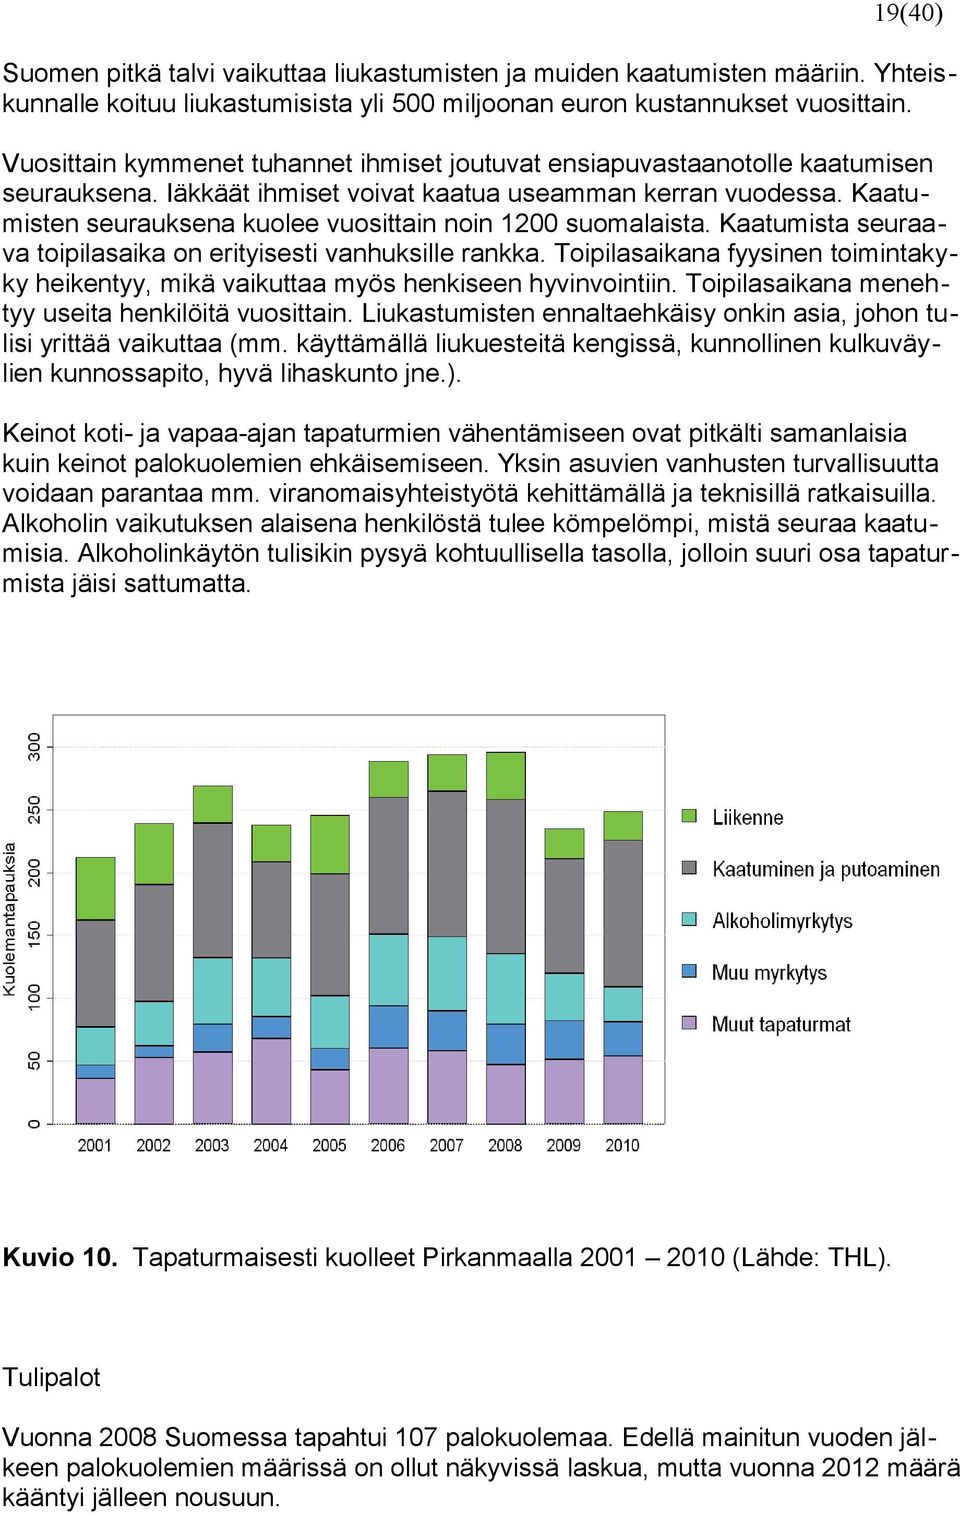 Kaatumisten seurauksena kuolee vuosittain noin 1200 suomalaista. Kaatumista seuraava toipilasaika on erityisesti vanhuksille rankka.